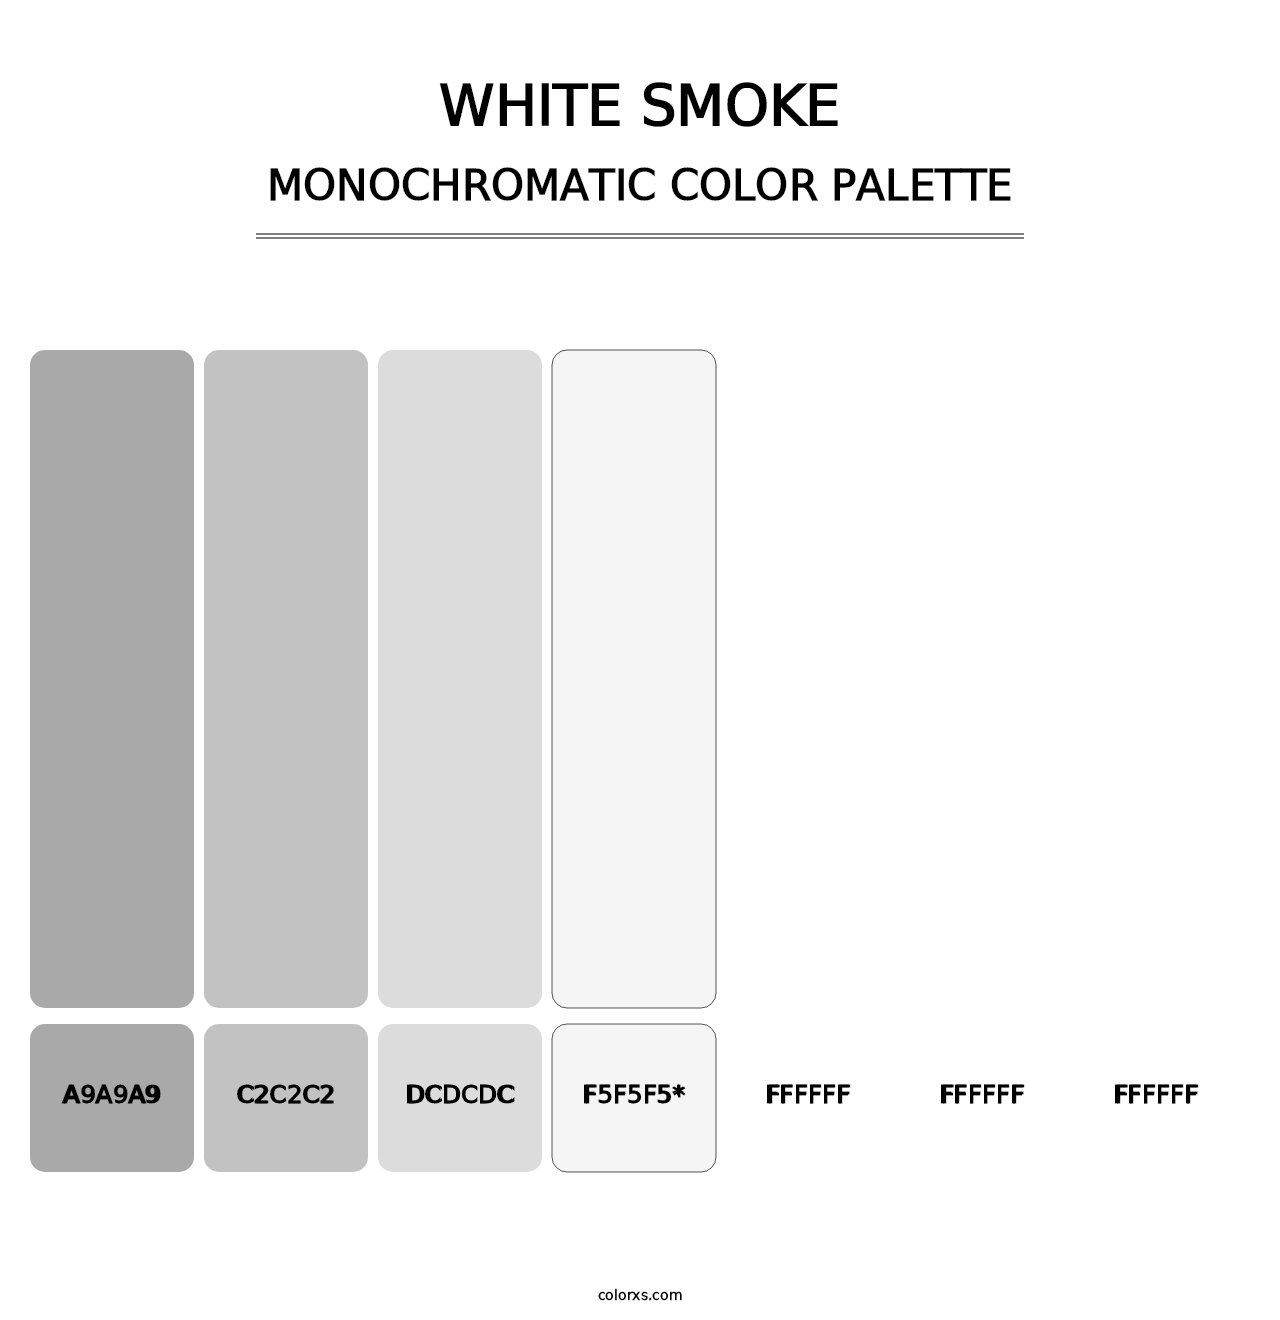 White Smoke - Monochromatic Color Palette